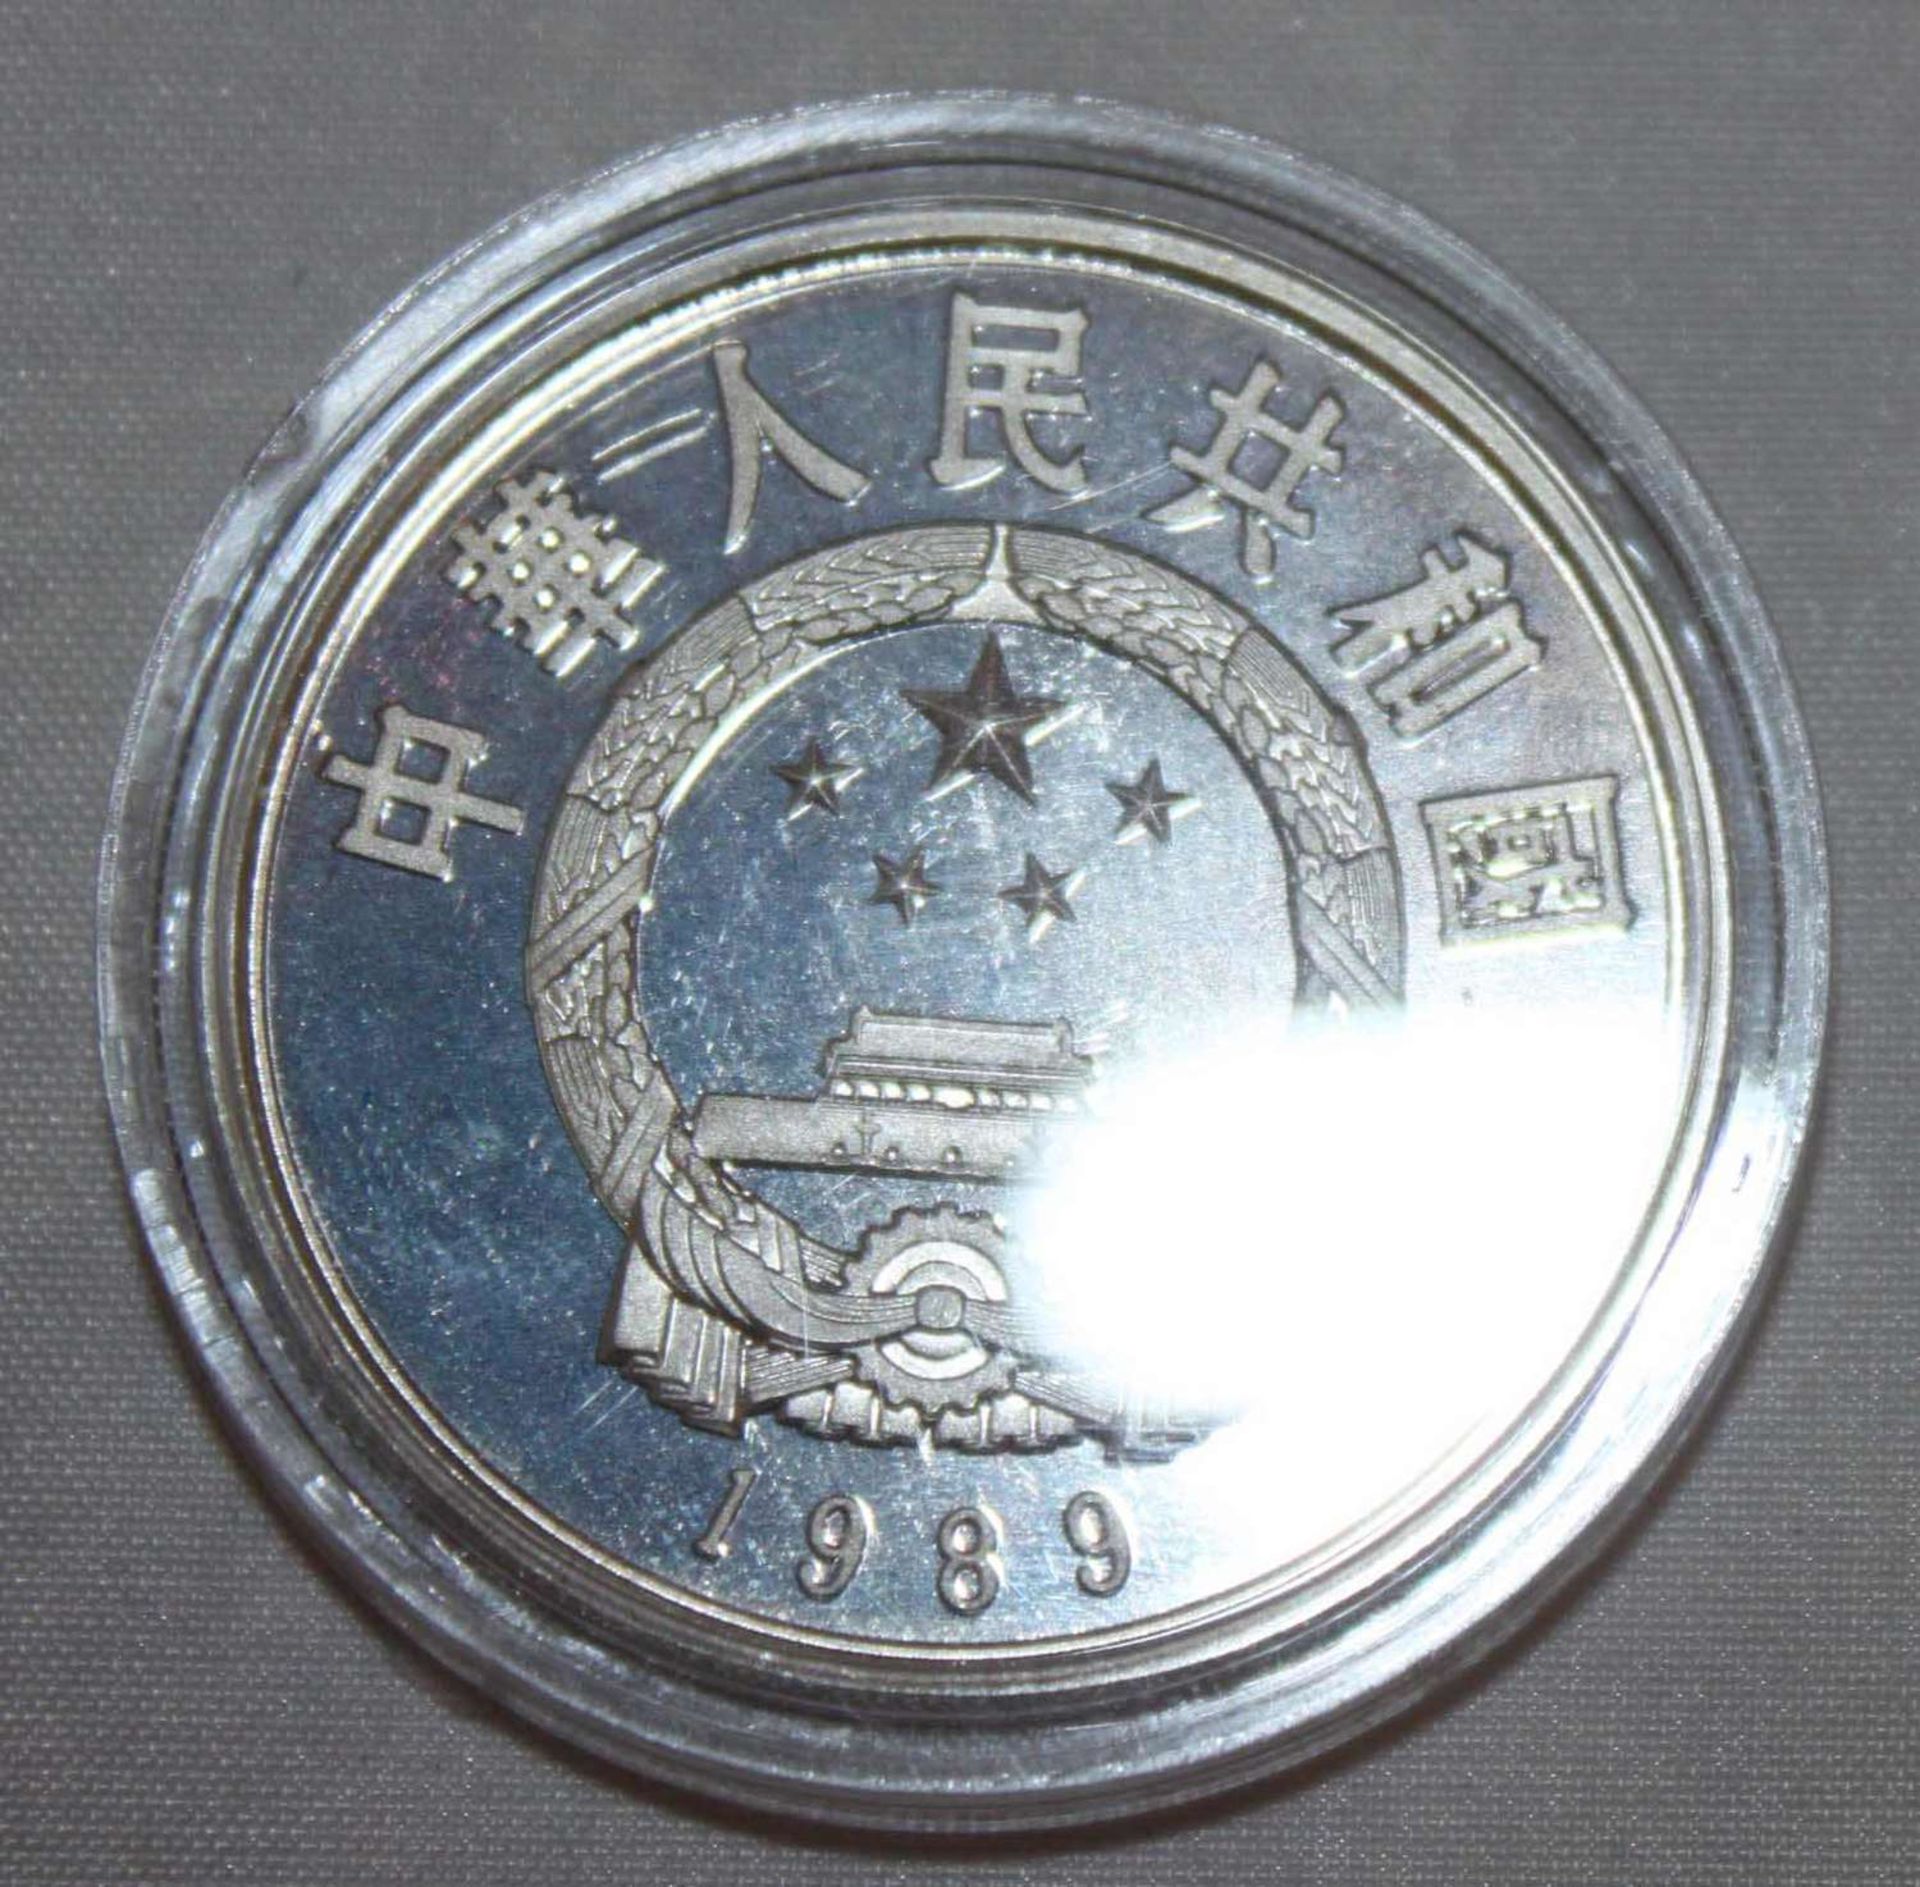 China 1989, 5 Yuan - Silbermünze "Huan Dao Po". Silber 900. Gewicht: 22,2 gr.. In Kapsel. Erhaltung: - Bild 2 aus 3